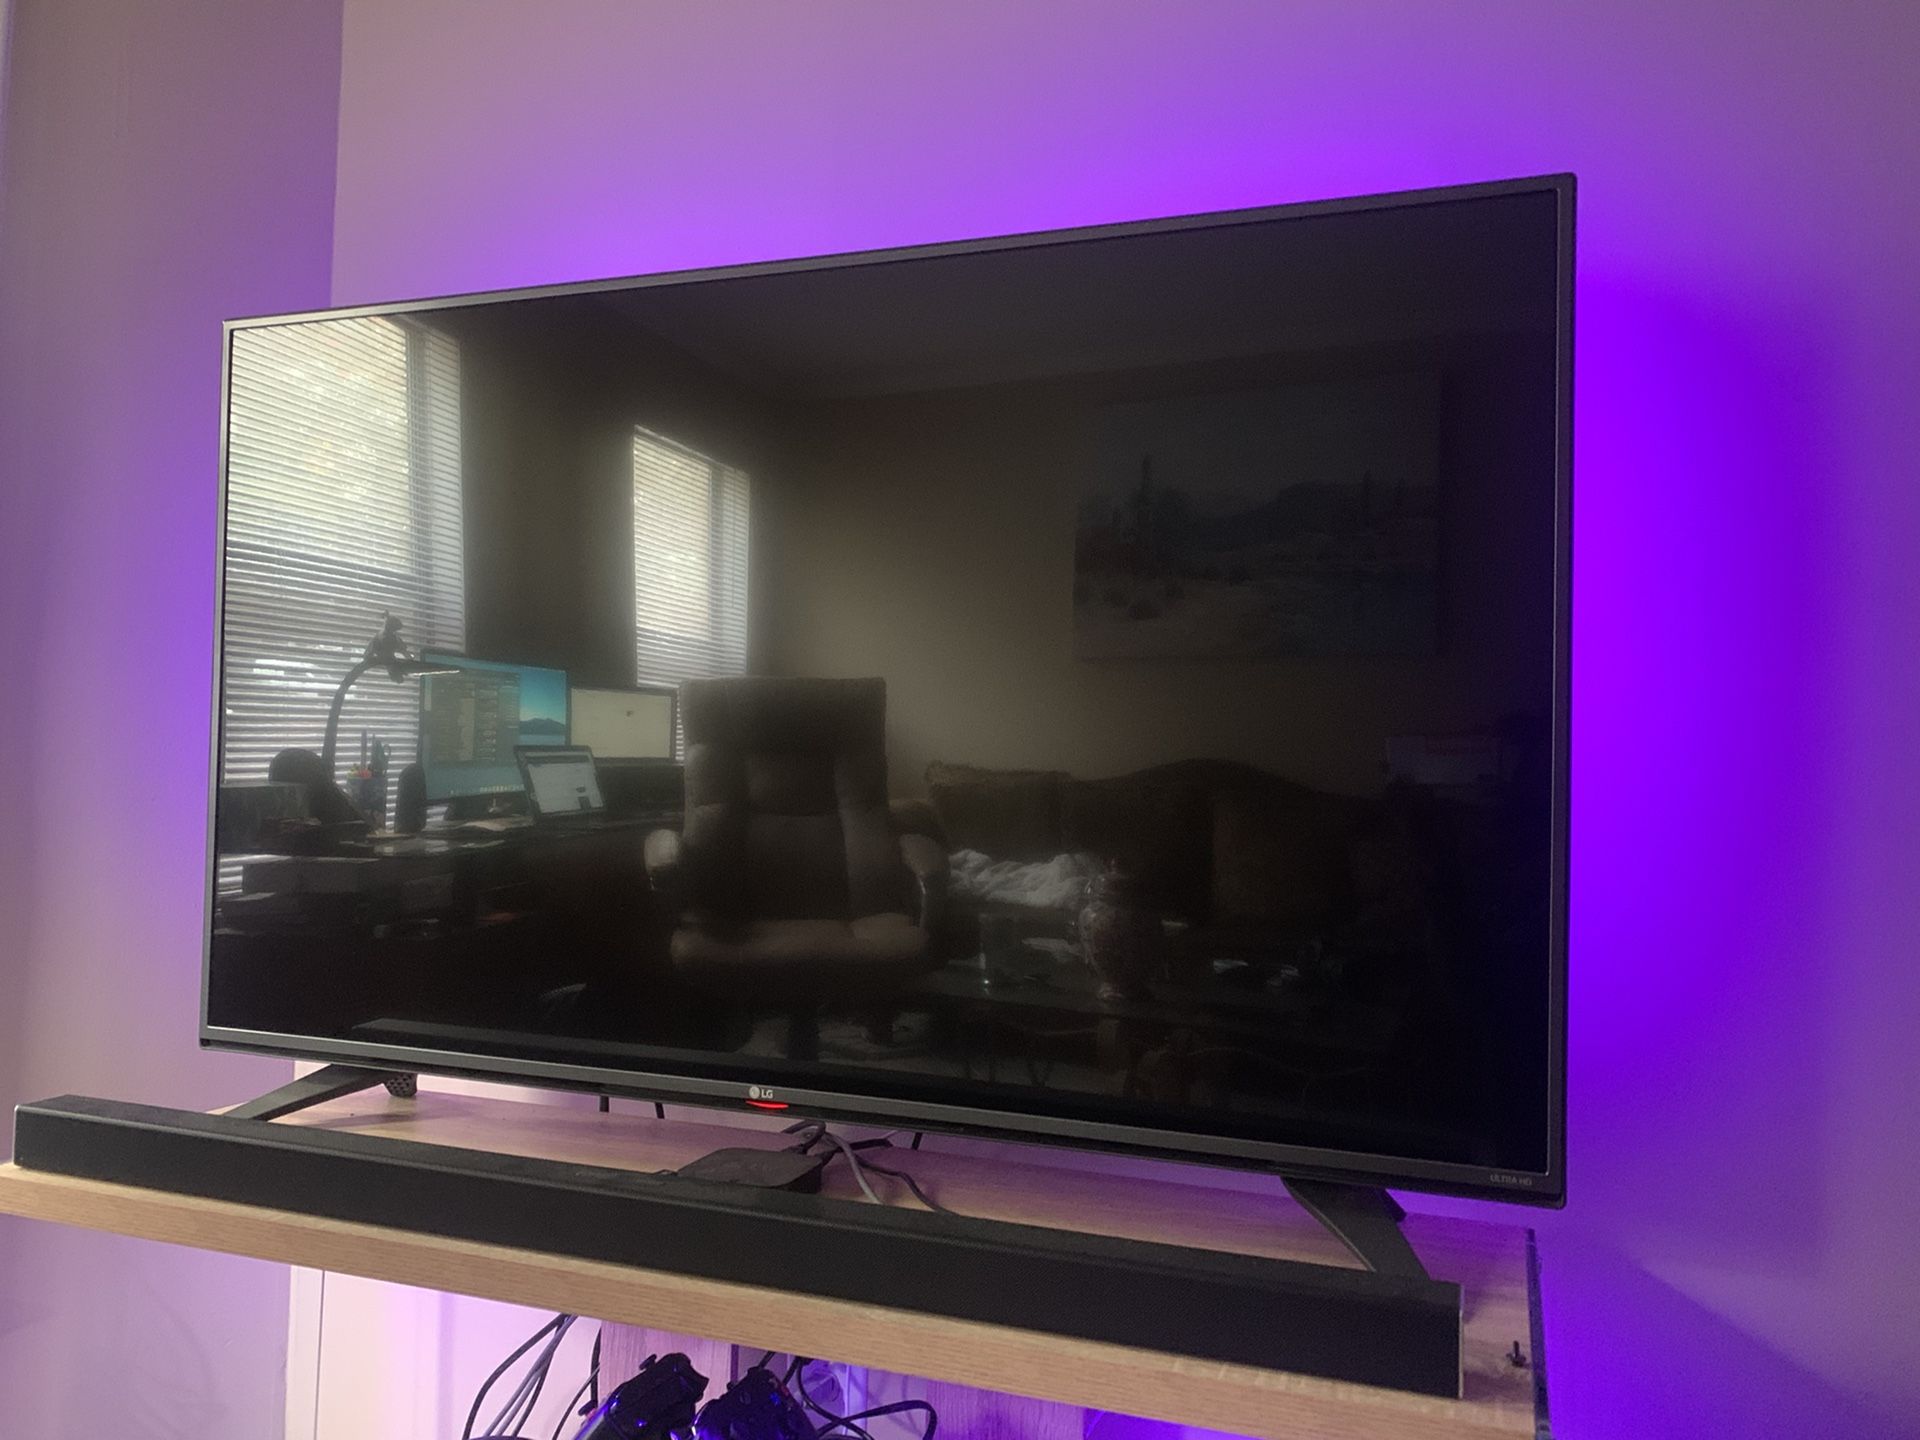 LG 55” INCH 4K ULTRA HD LED SMART FLAT SCREEN TV